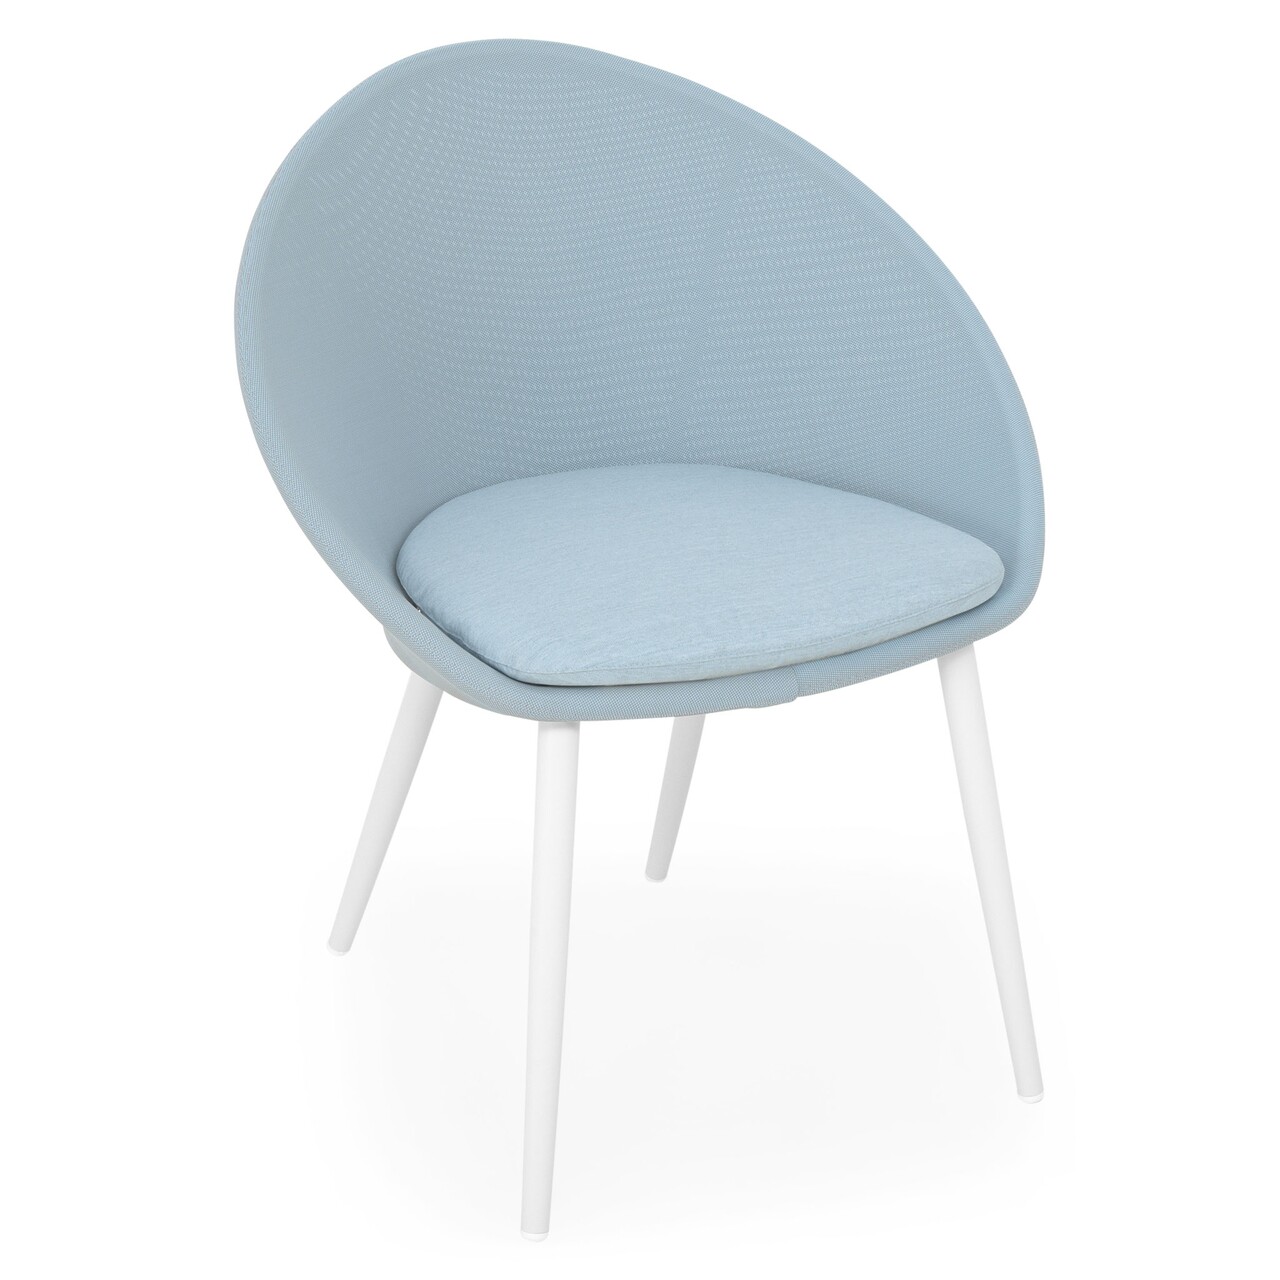 Spade 4 db Kültéri szék, L.62 l.66 H.82 cm, alumínium/textíl, fehér/kék